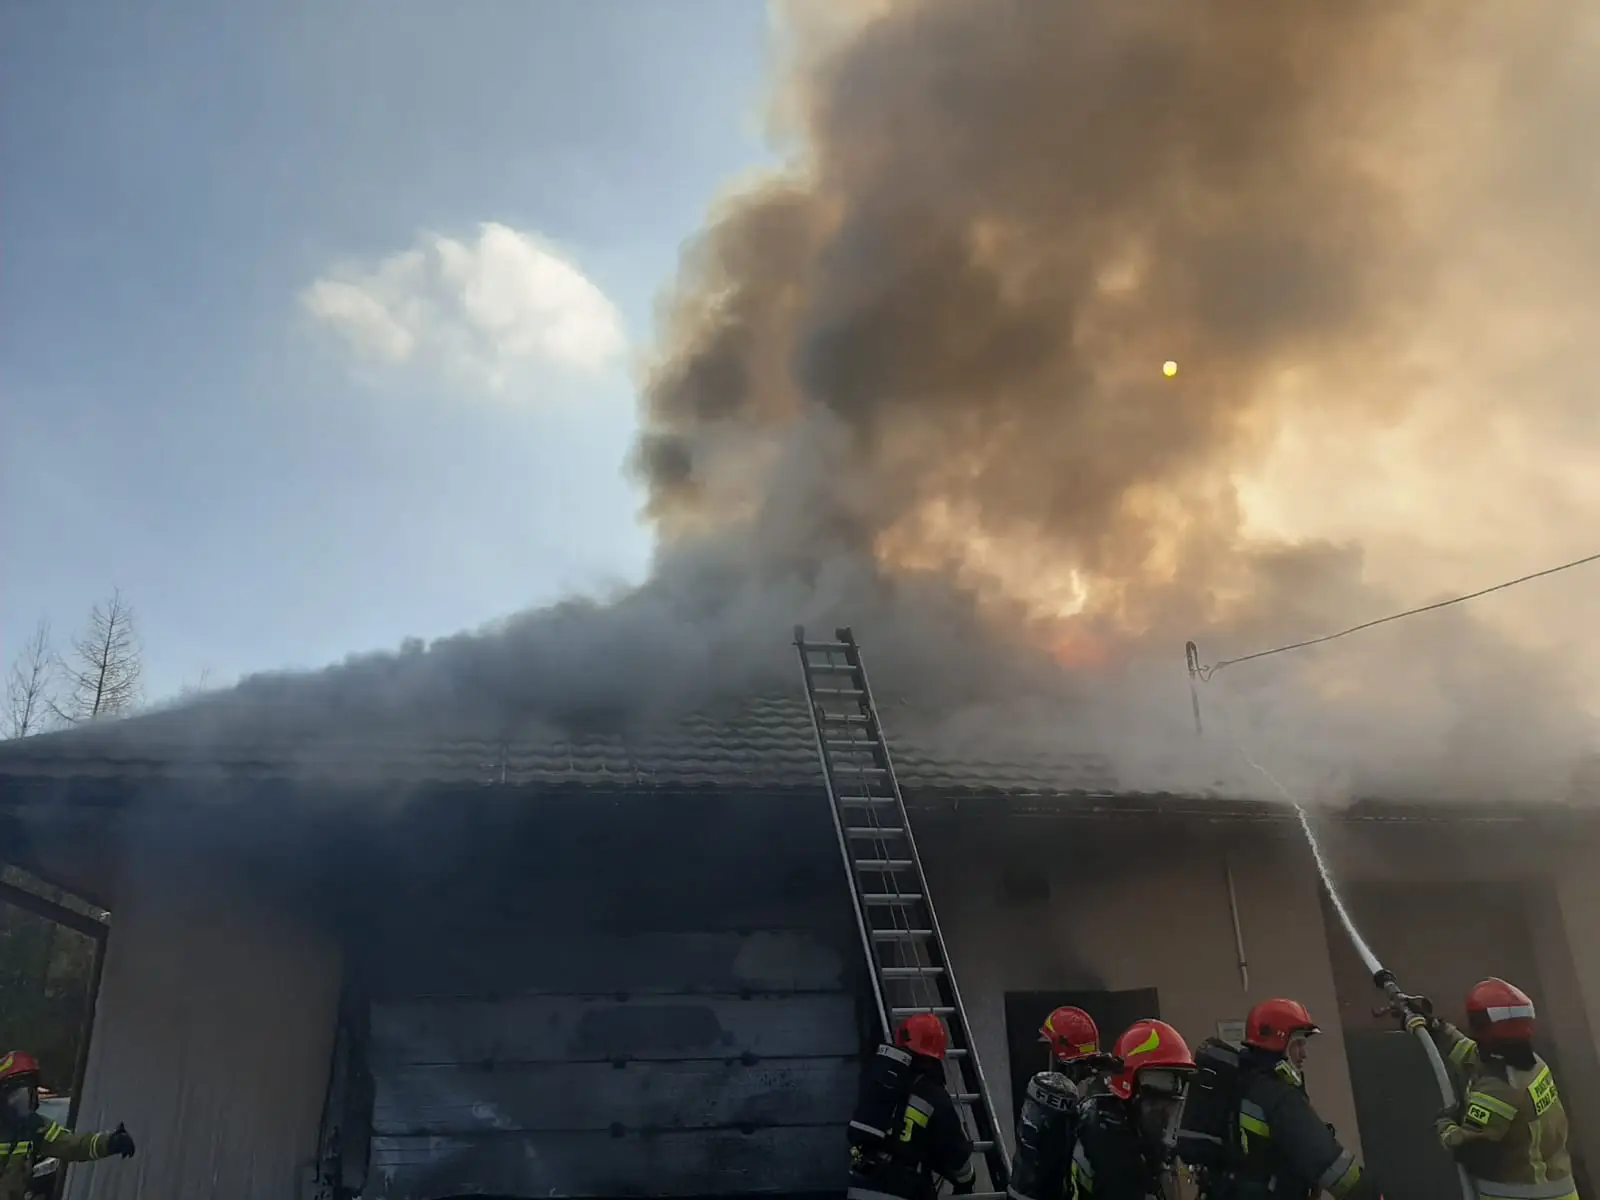 Nowy Sącz ul. Starowiejska: Pożar garażu w budynku mieszkalnym - jedna osoba poszkodowana